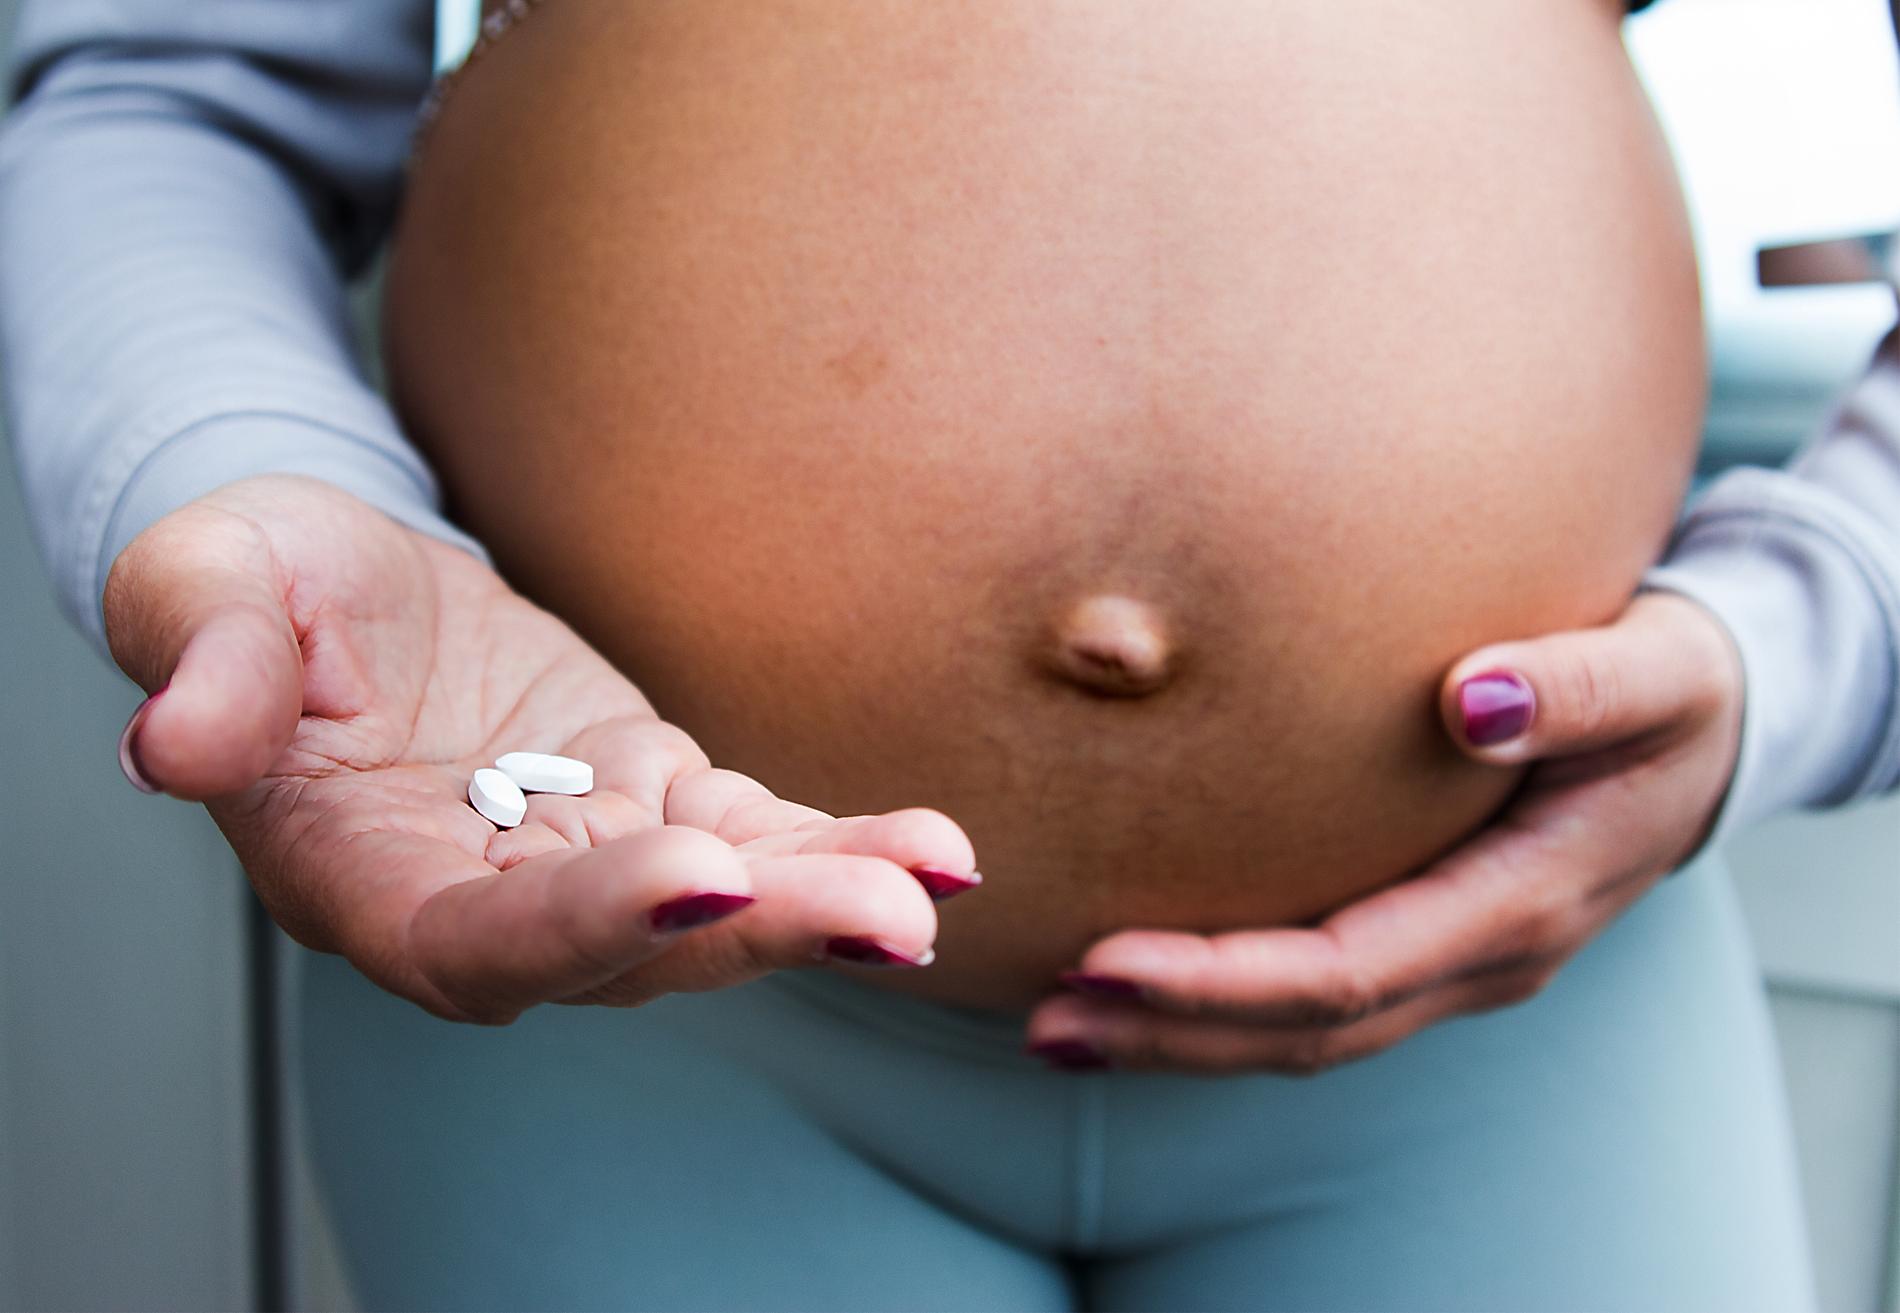 Det finns ingen koppling mellan paracetamol under graviditet och adhd eller autism hos barnet, enligt en studie från bland andra Karolinska institutet. Arkivbild.